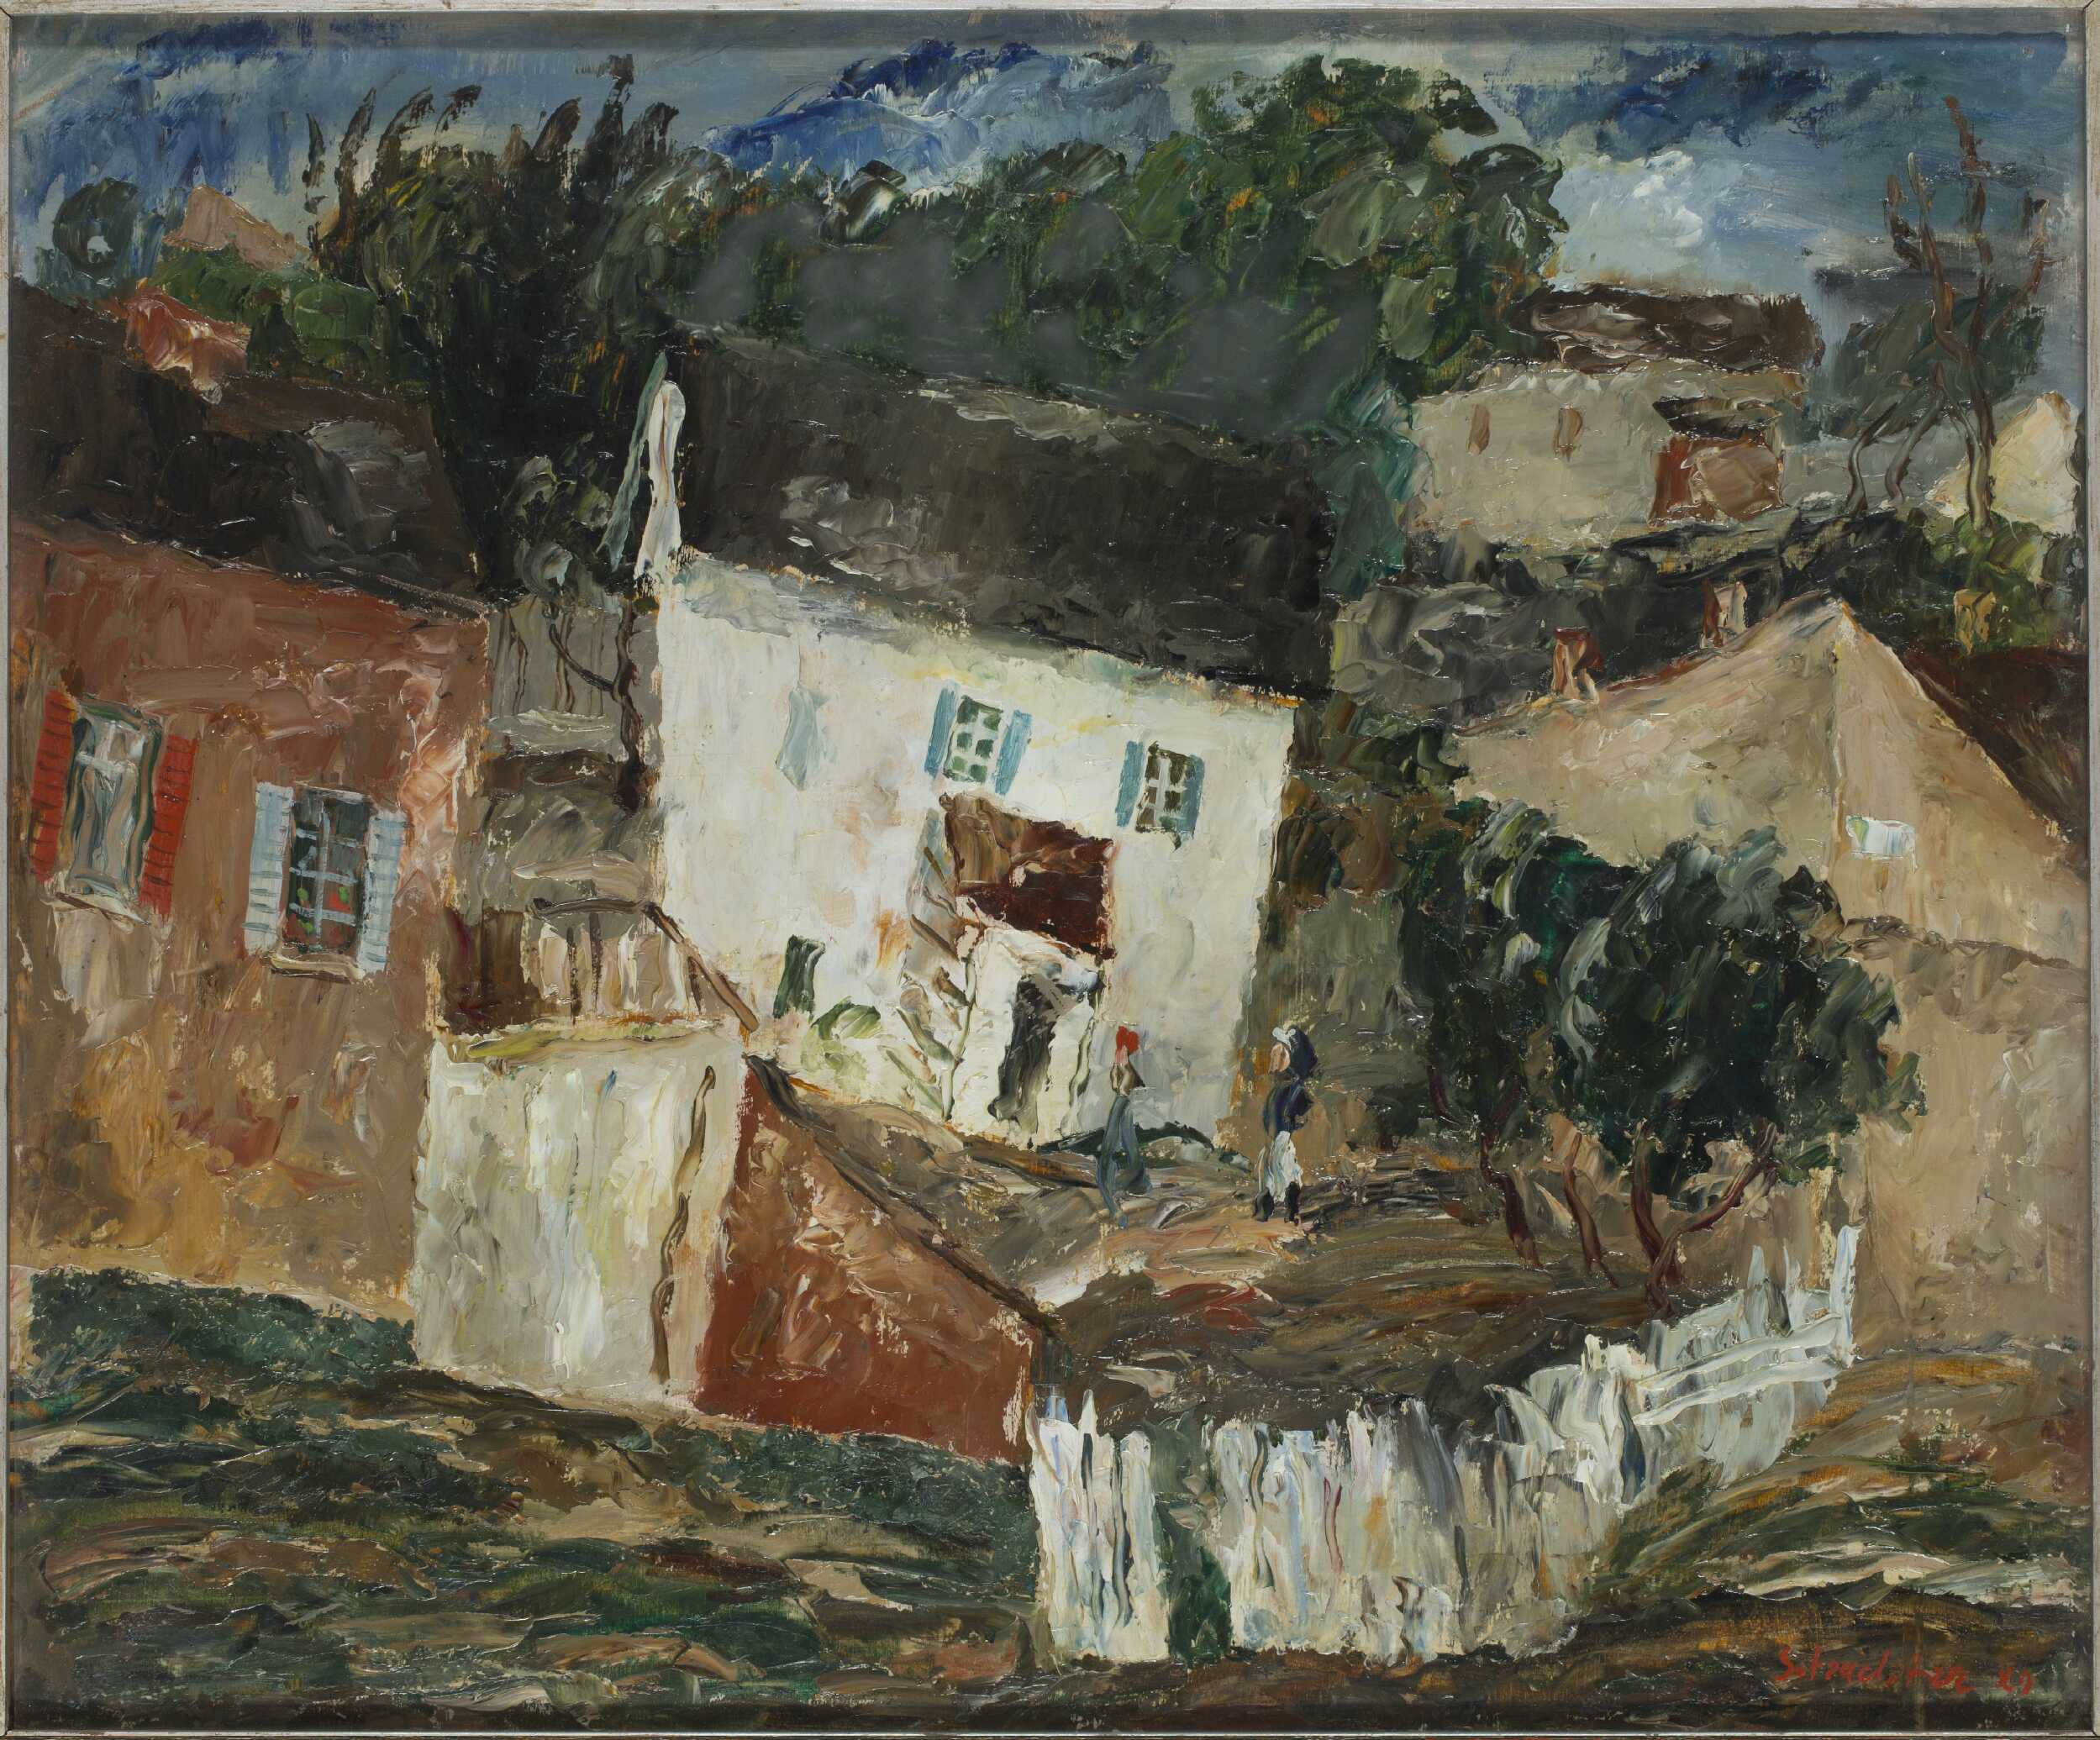 Peisaj din Kazimierz Dolny (?) by Symche Trachter - 1929 - 50 x 60 cm 